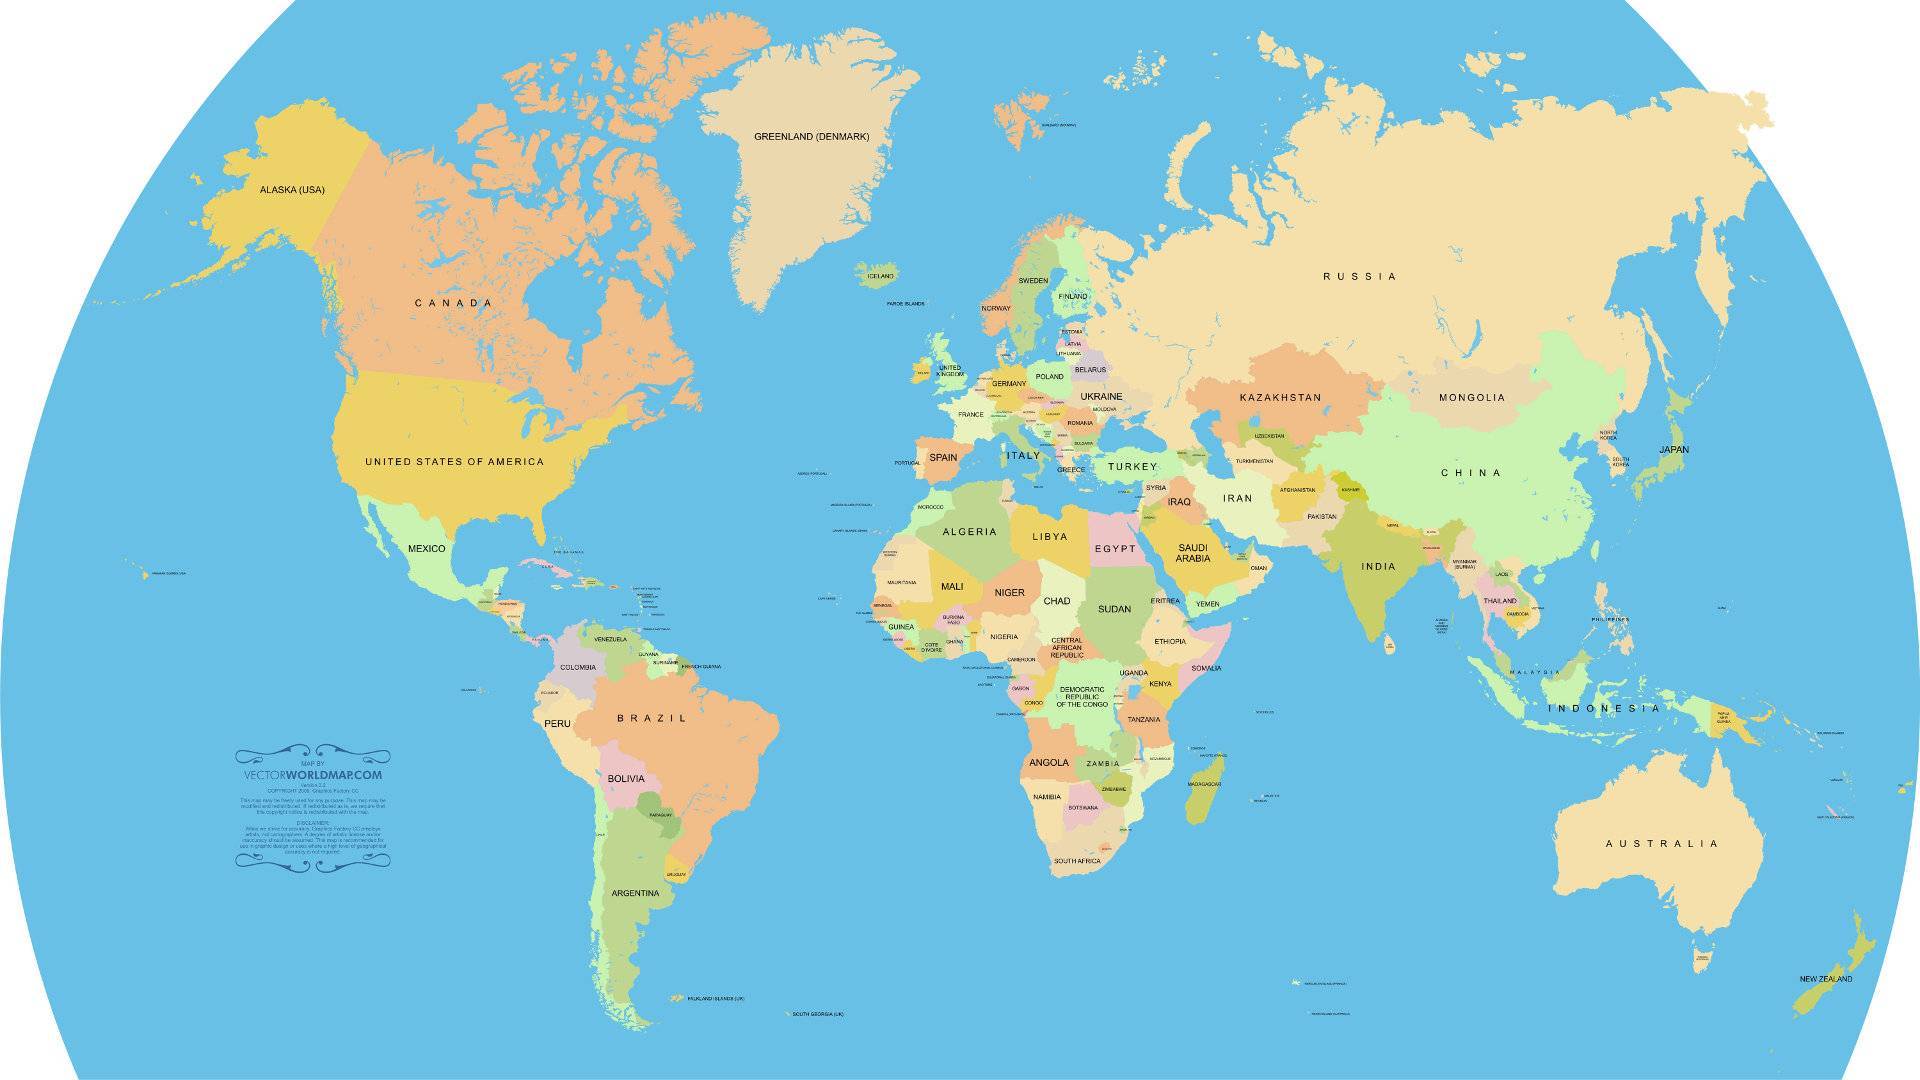 Реальная карта мира без искажений онлайн